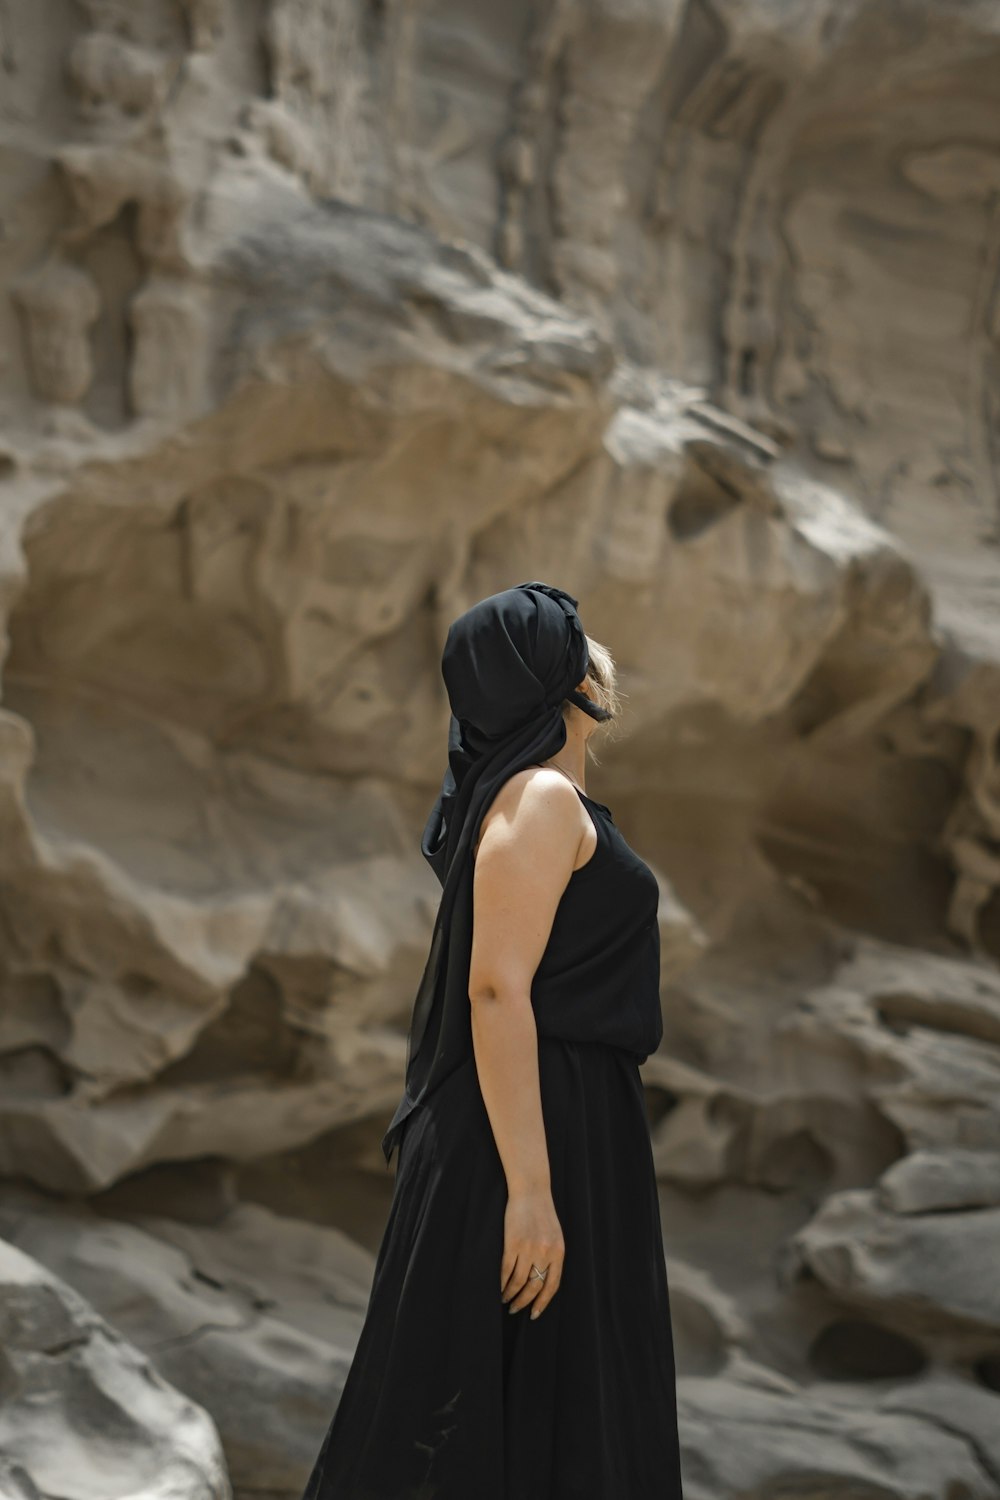 Eine Frau in einem schwarzen Kleid steht vor einer Felsformation